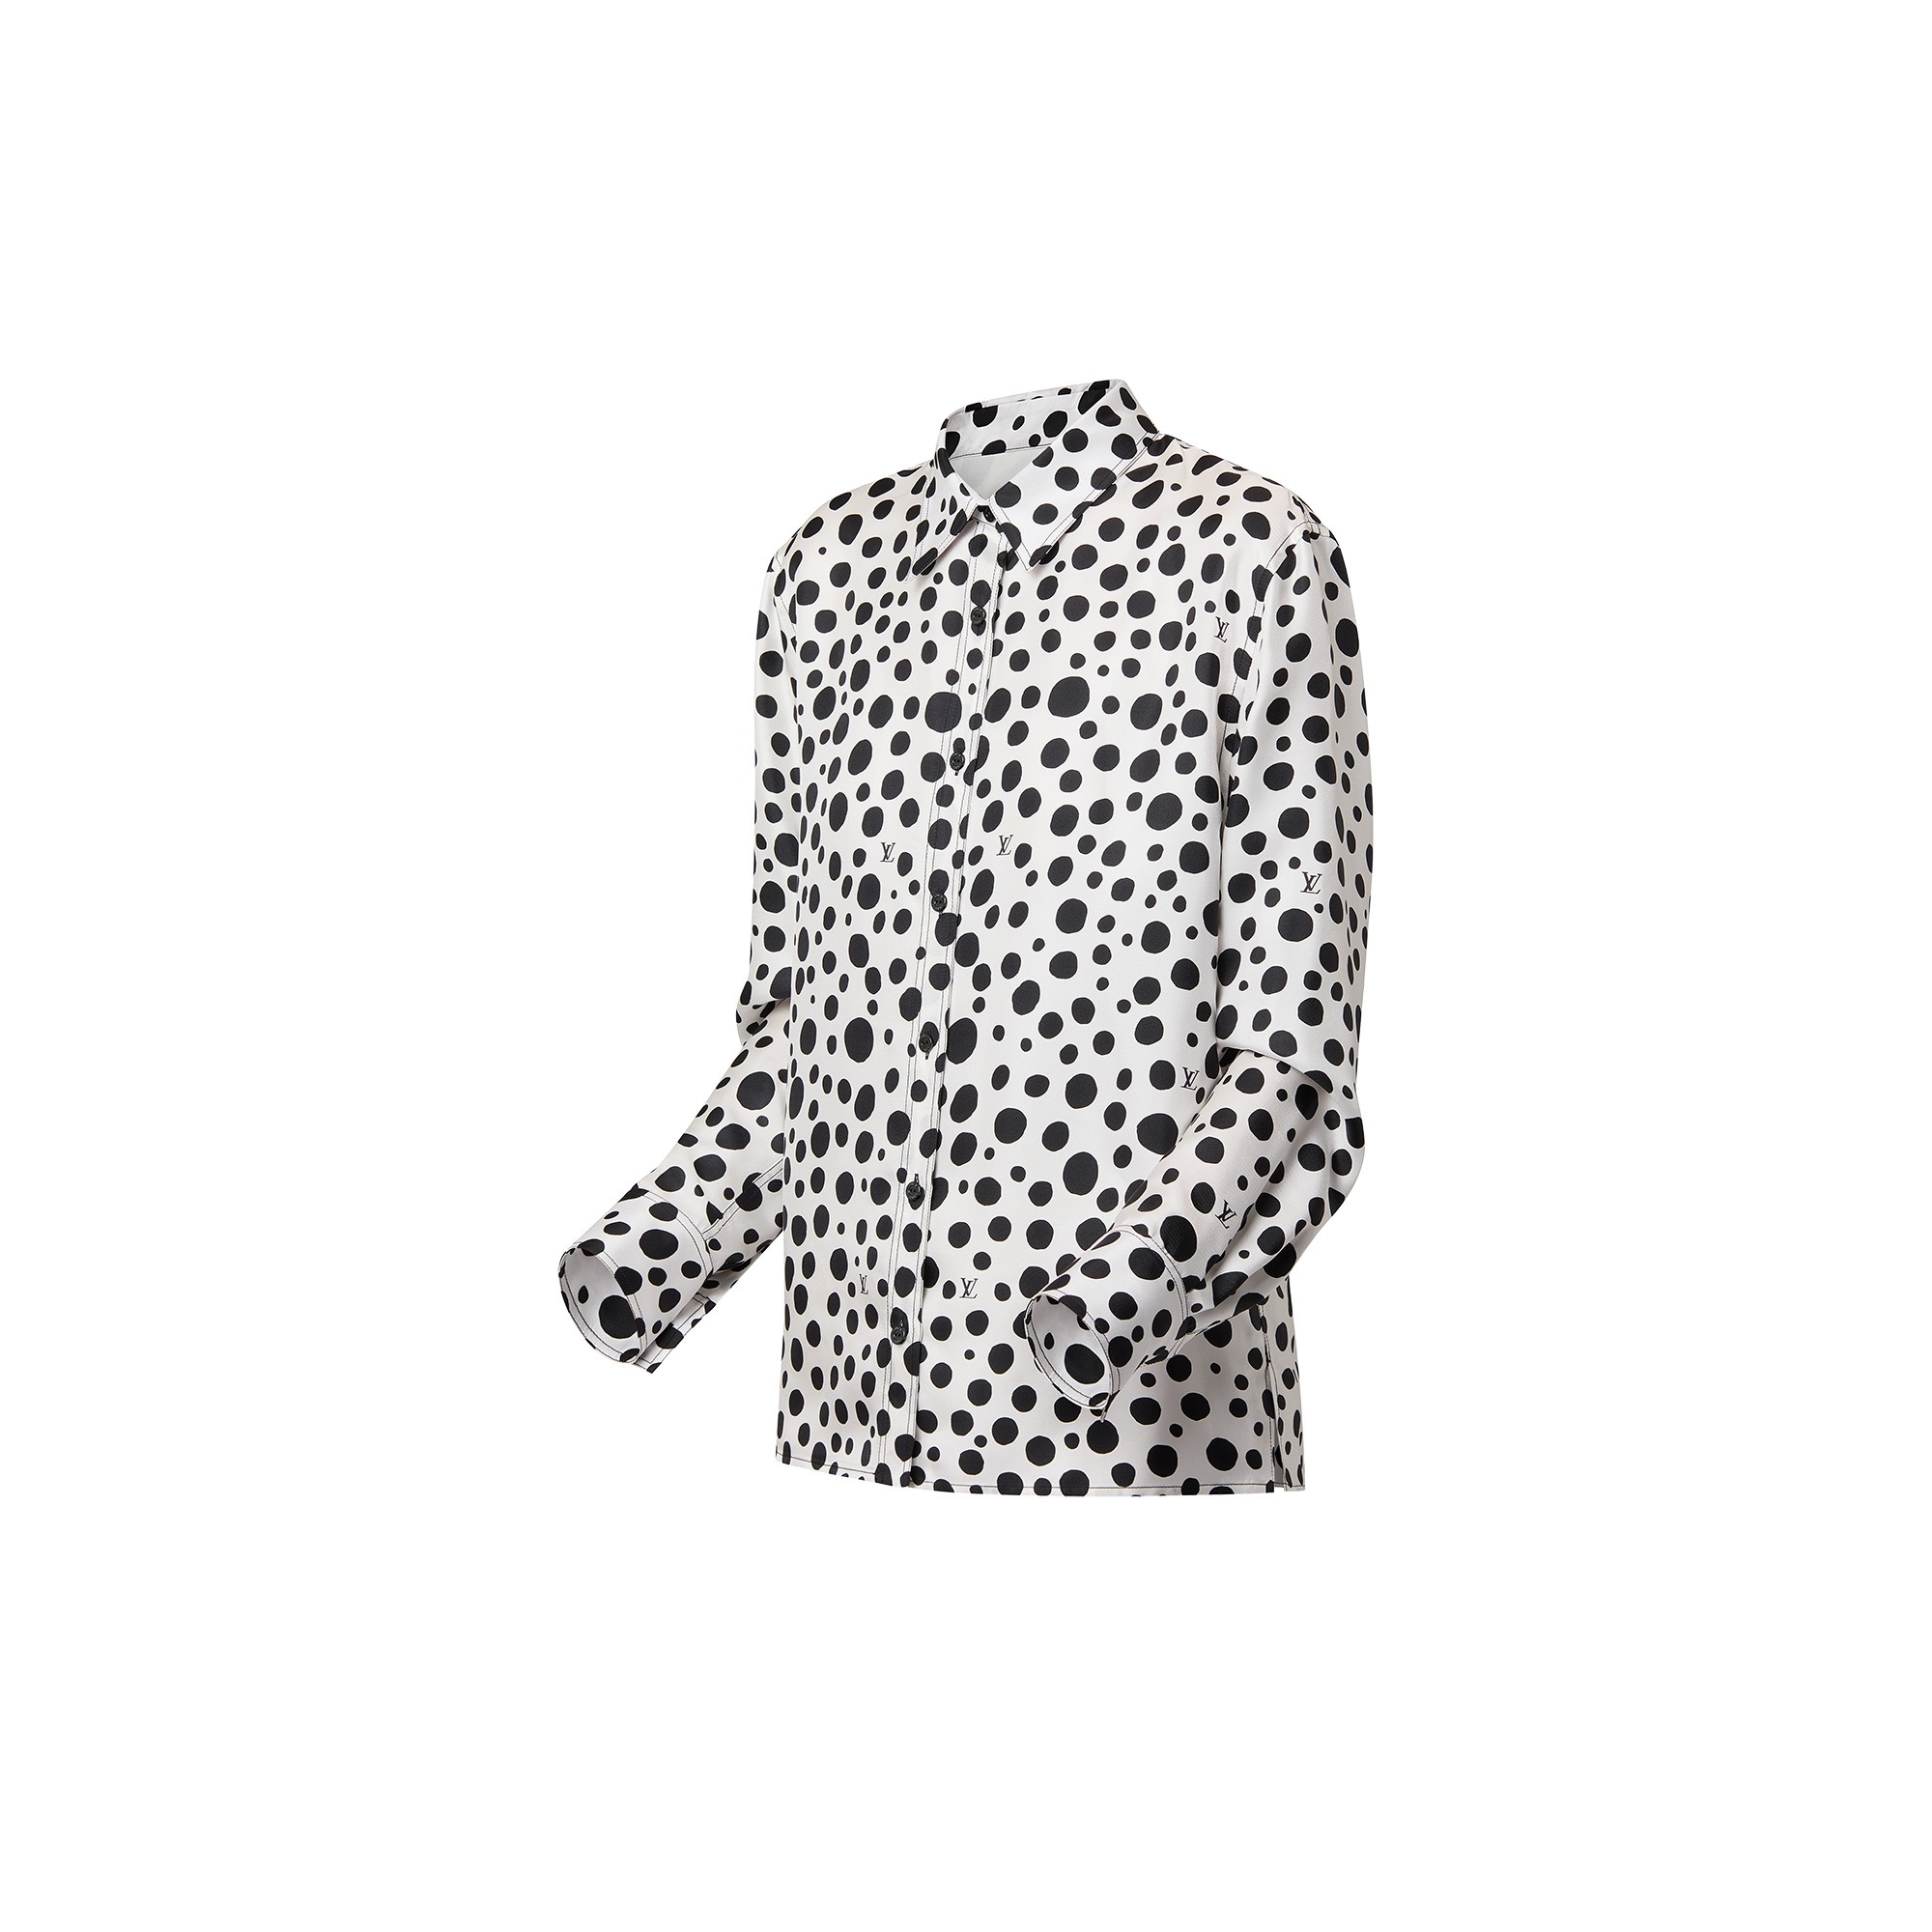 Louis Vuitton x Yayoi Kusama Infinity Dots T-Shirt Black/White